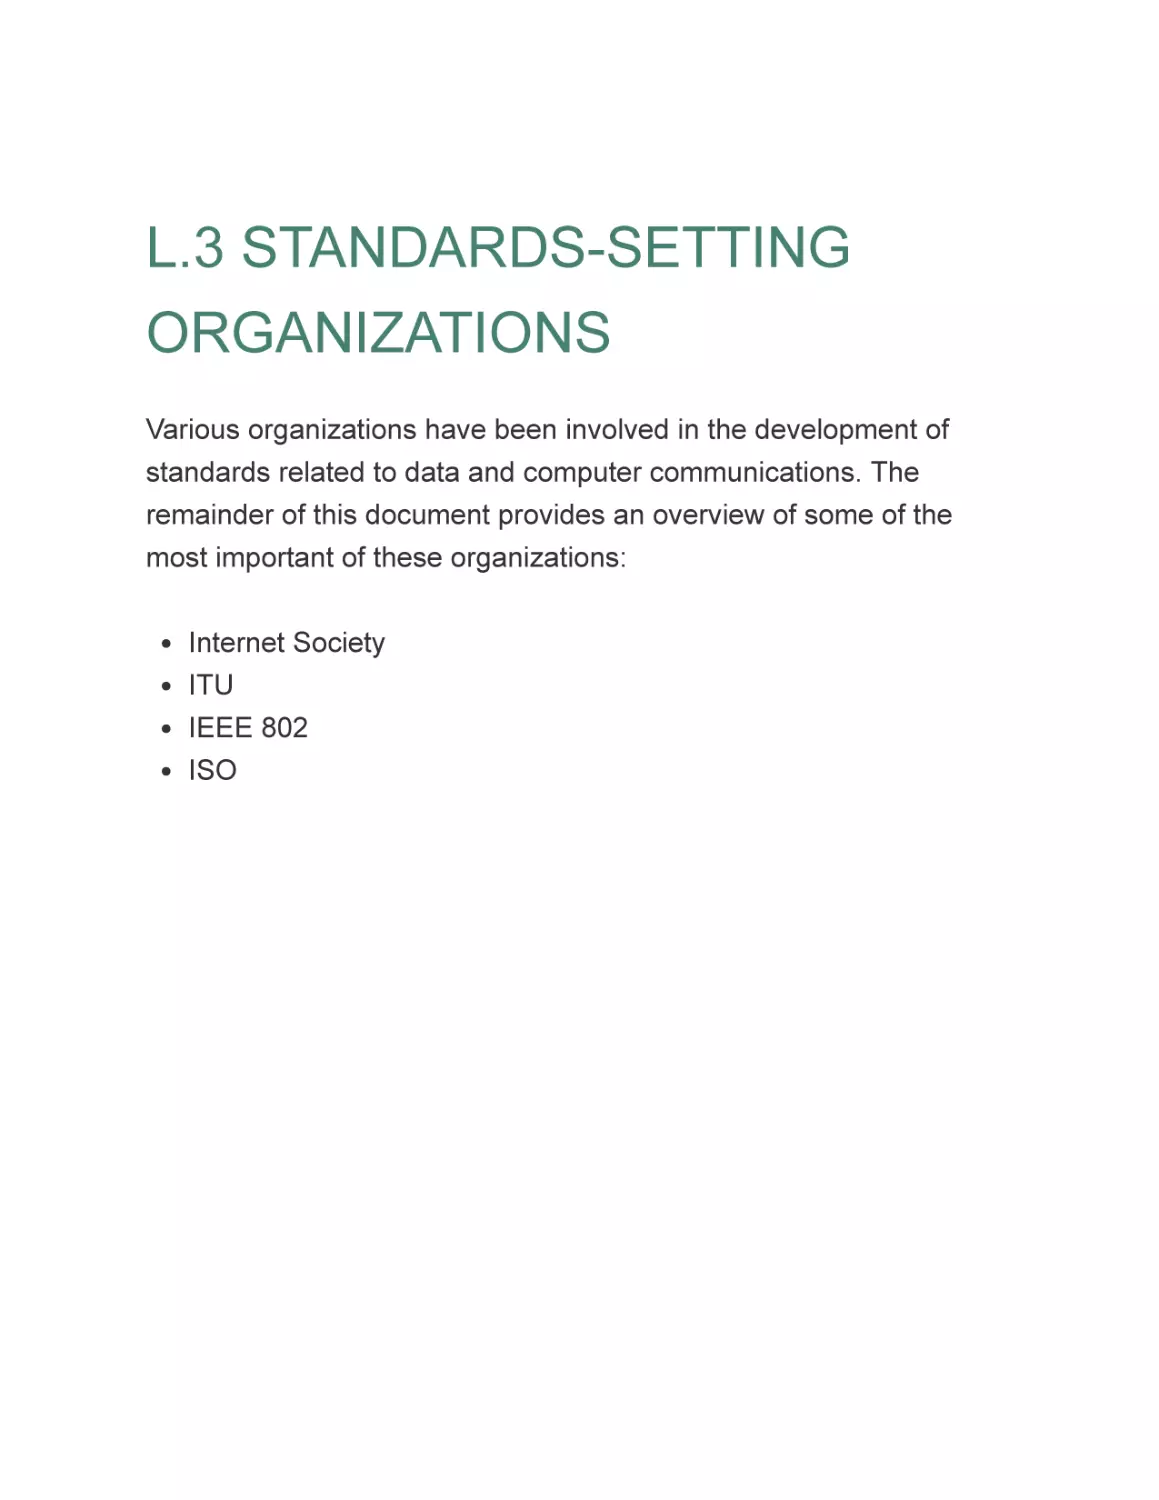 L.3 STANDARDS-SETTING ORGANIZATIONS